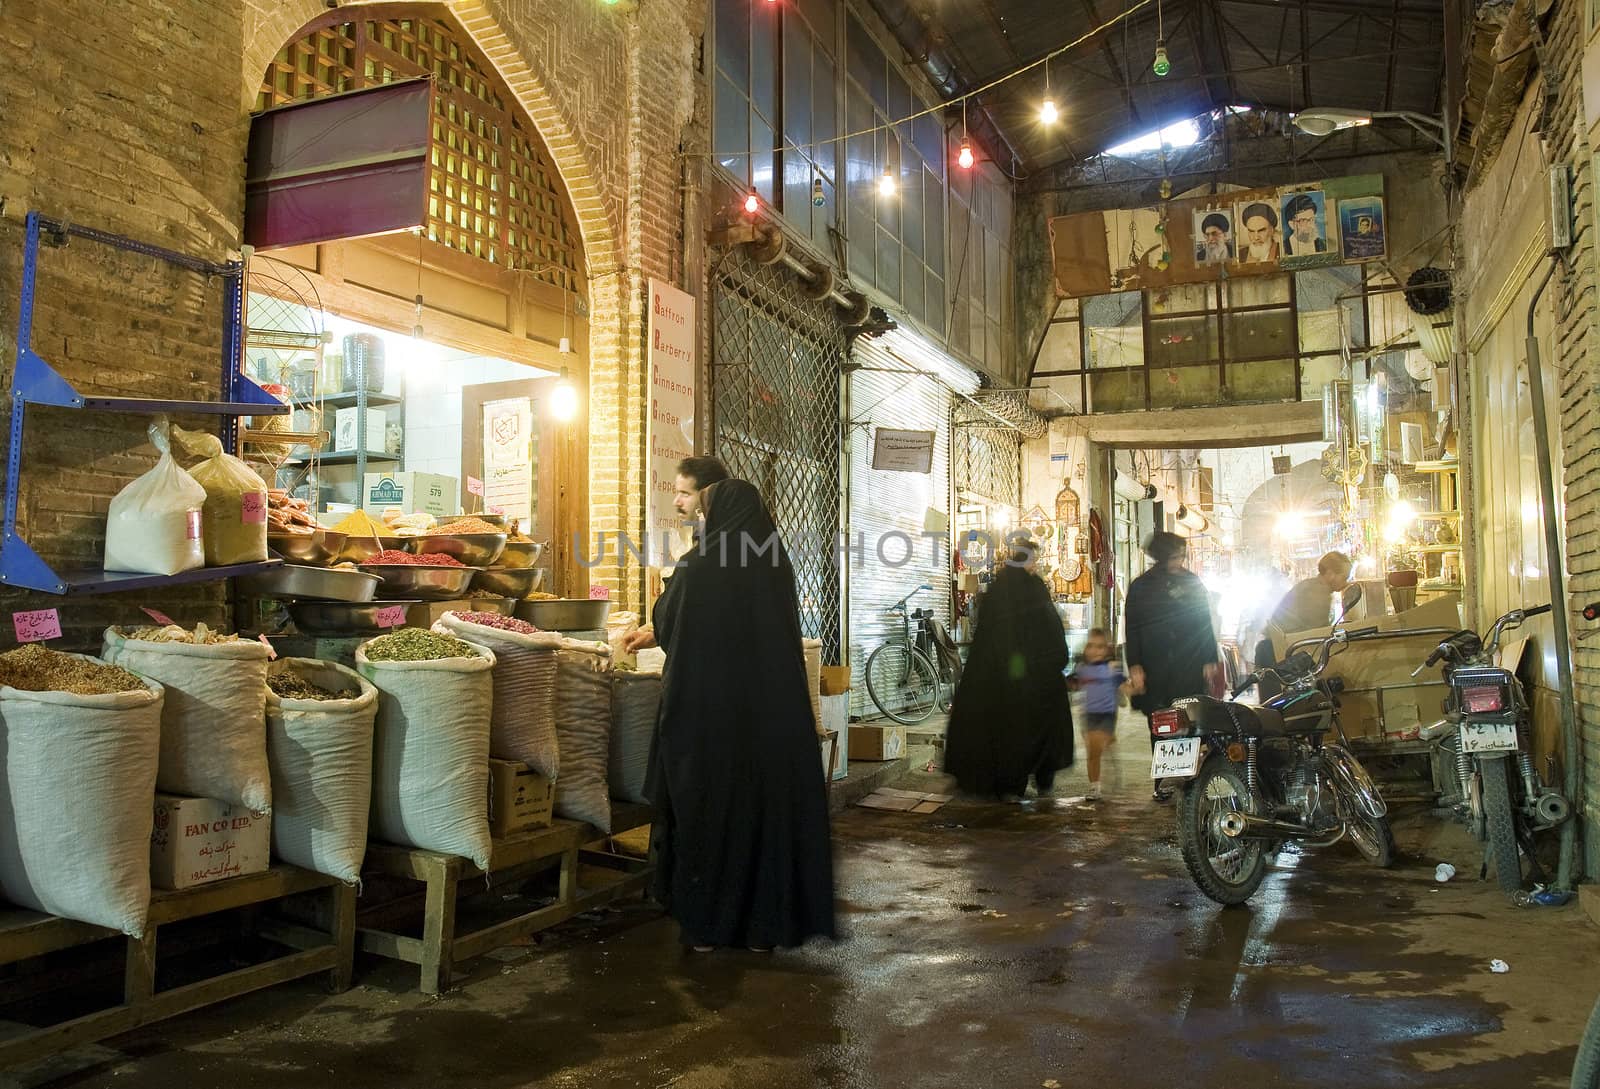 bazaar market in isfahan iran by jackmalipan